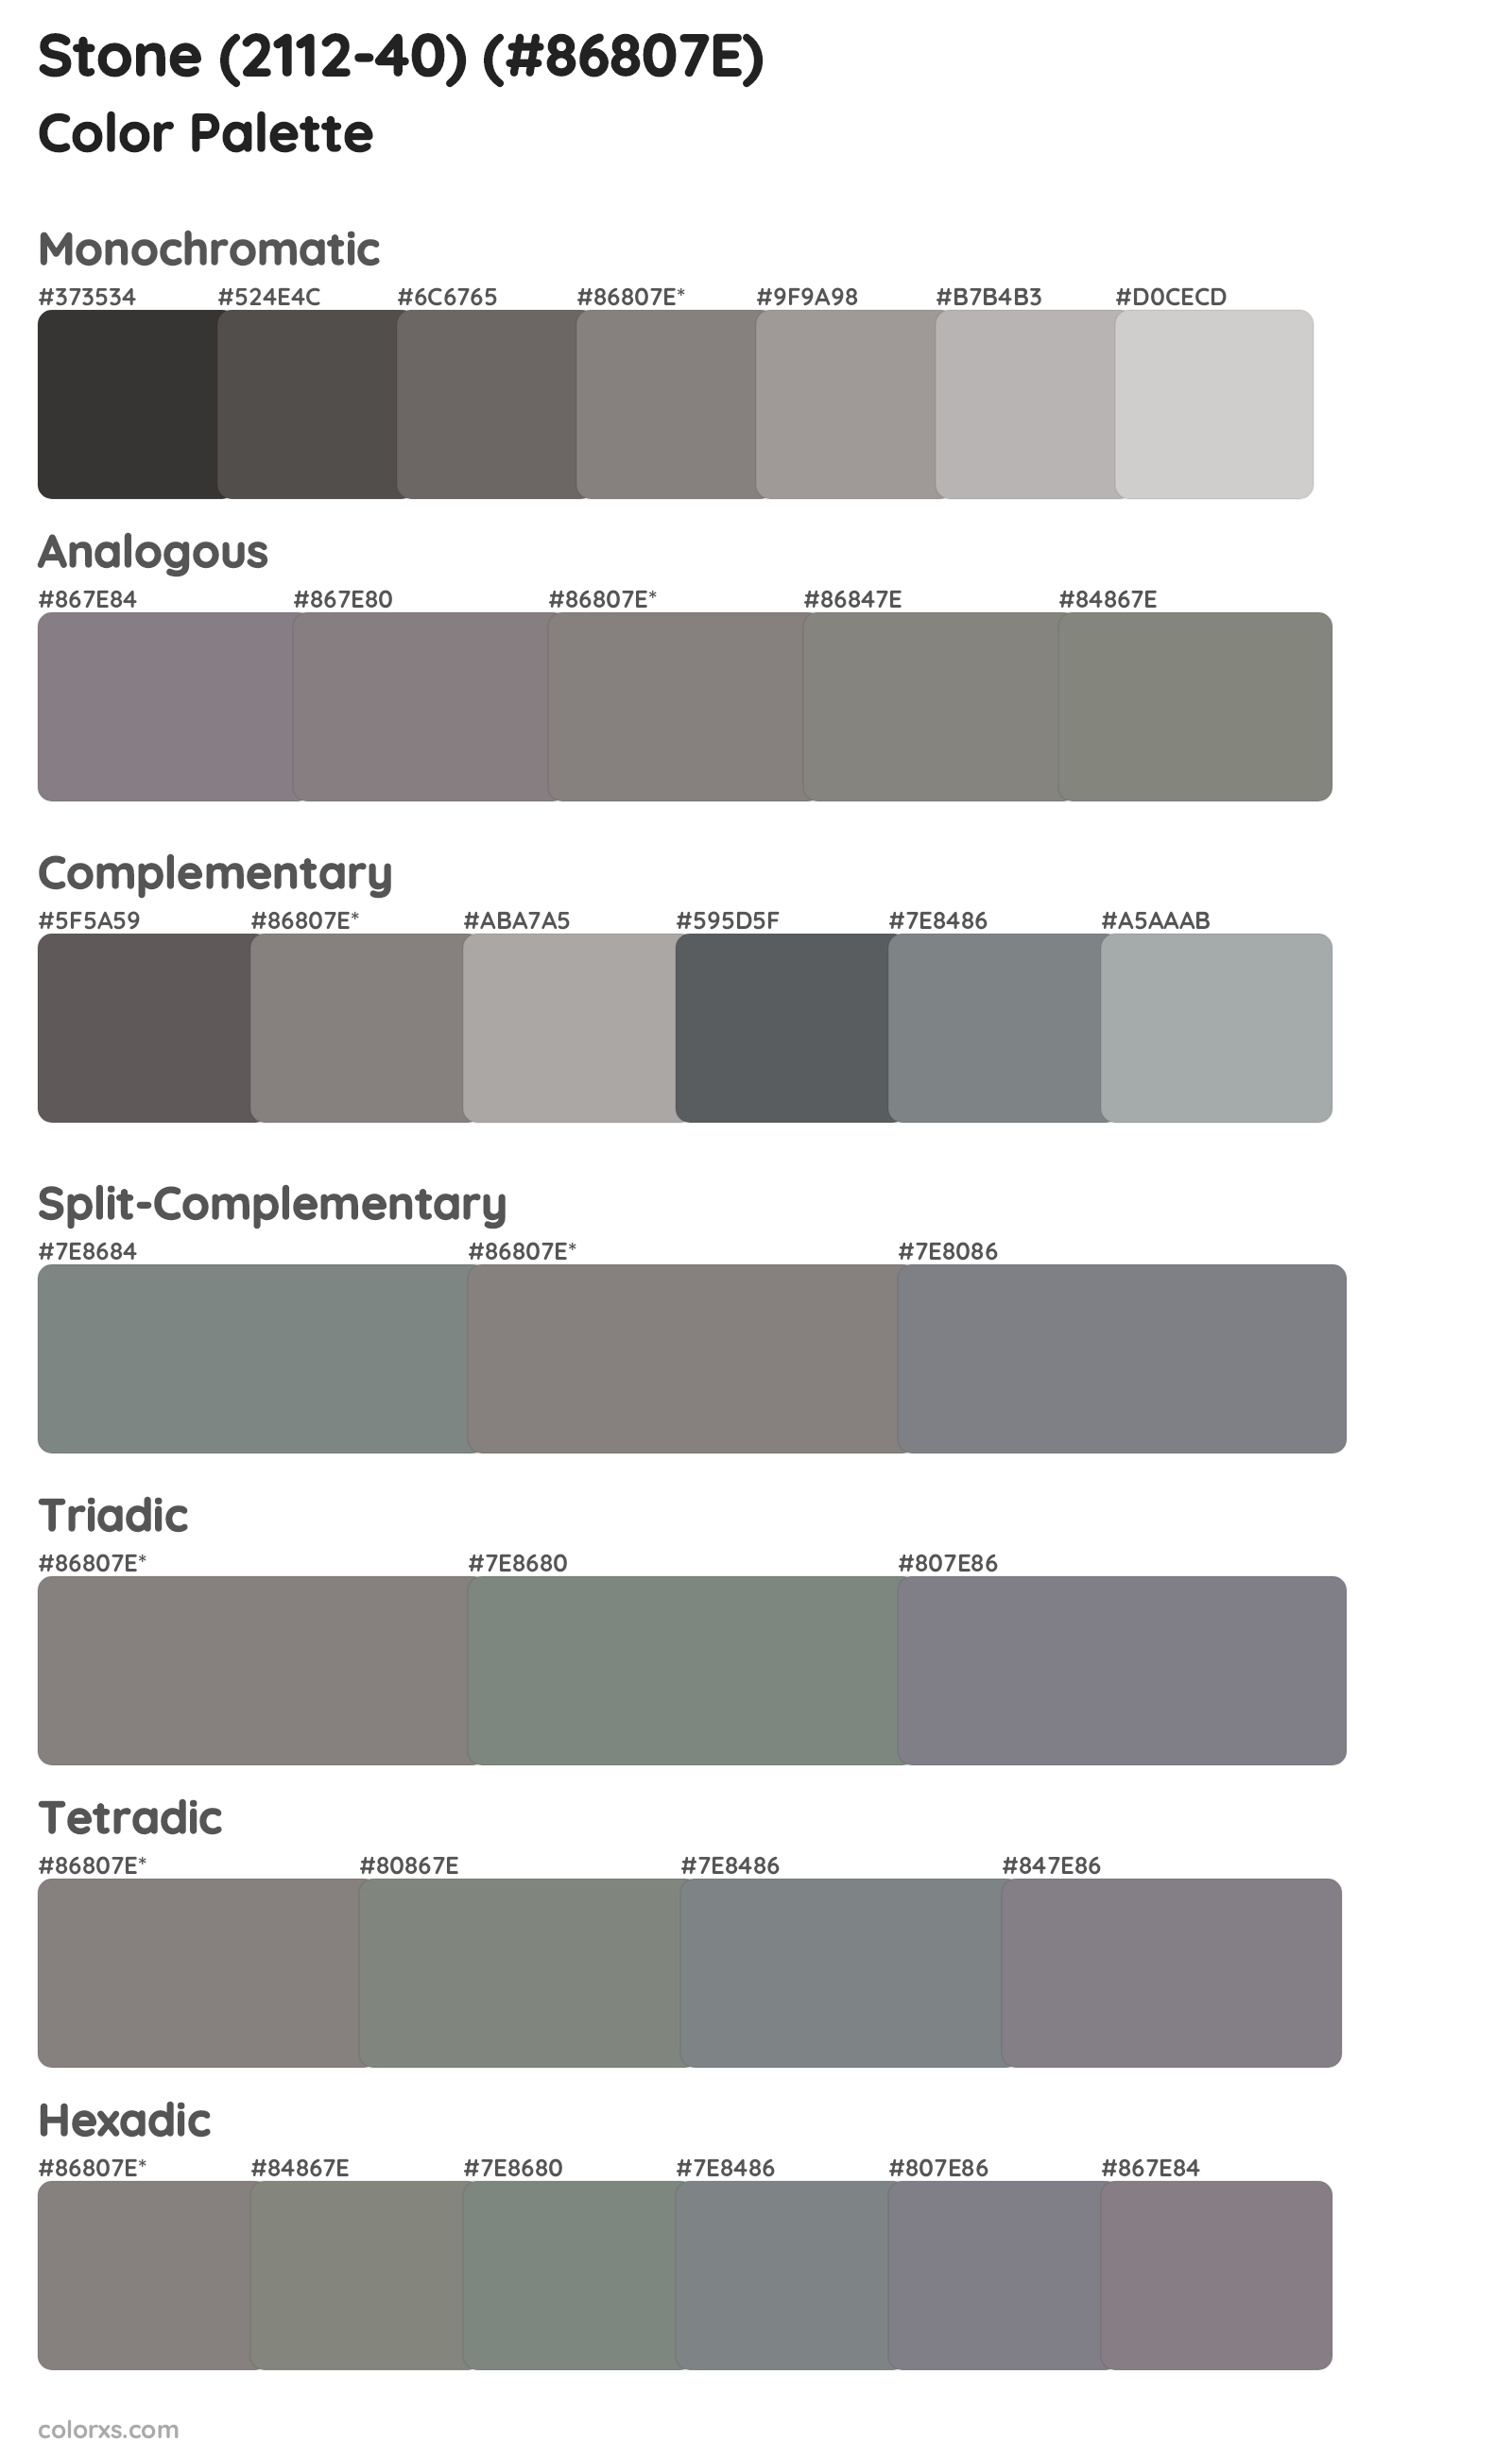 Stone (2112-40) Color Scheme Palettes